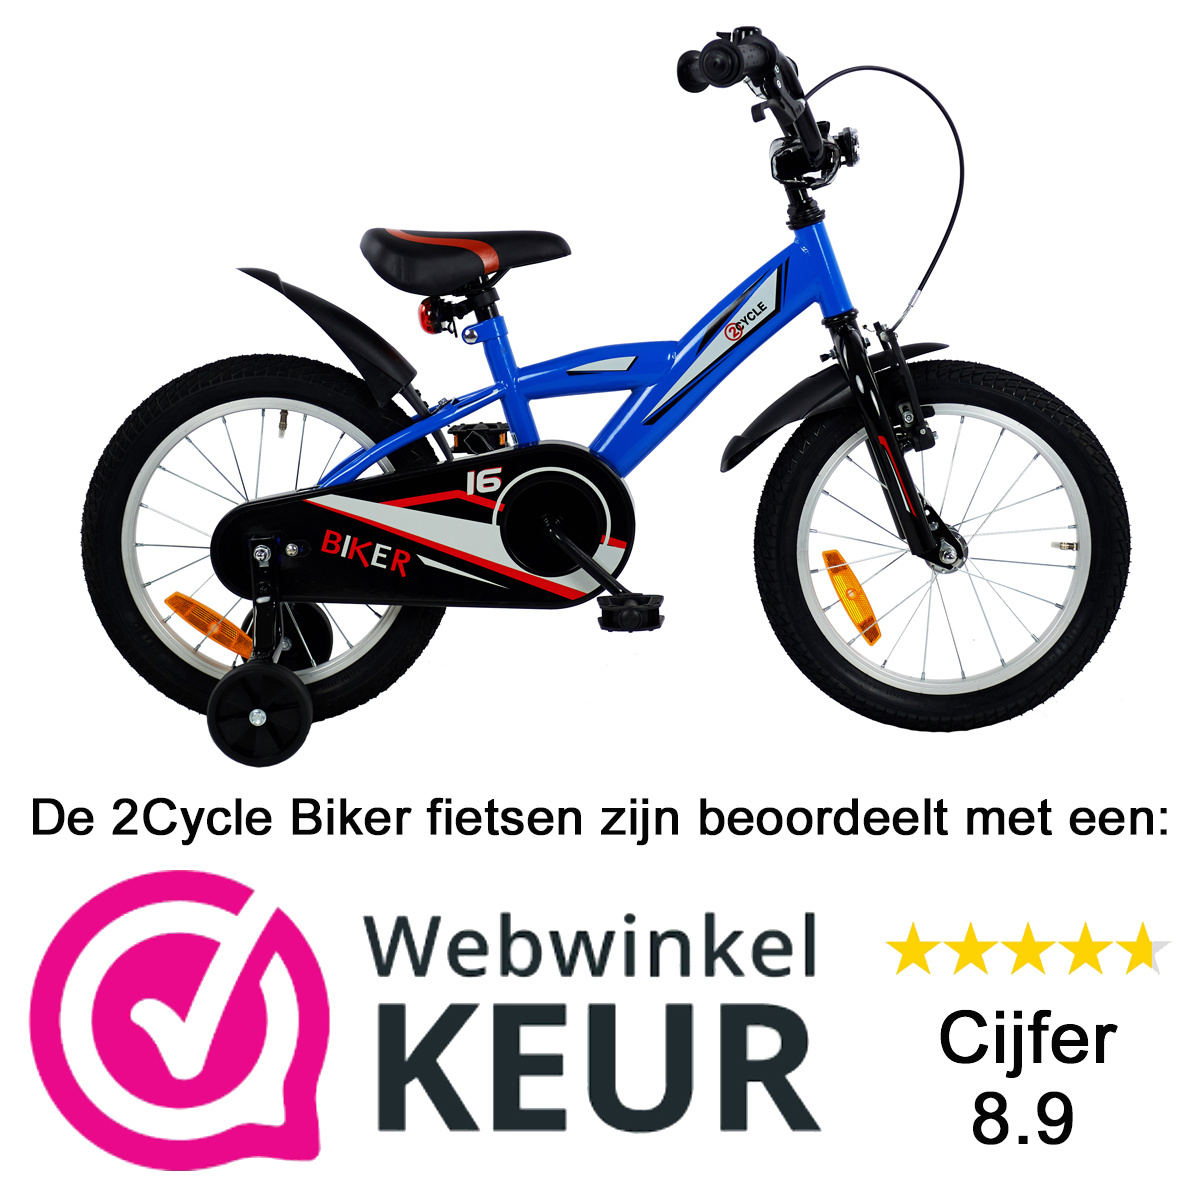 Badkamer pijnlijk Habitat Goedkope blauwe 2Cycle Biker jongensfiets online kopen | Prijskiller.nl